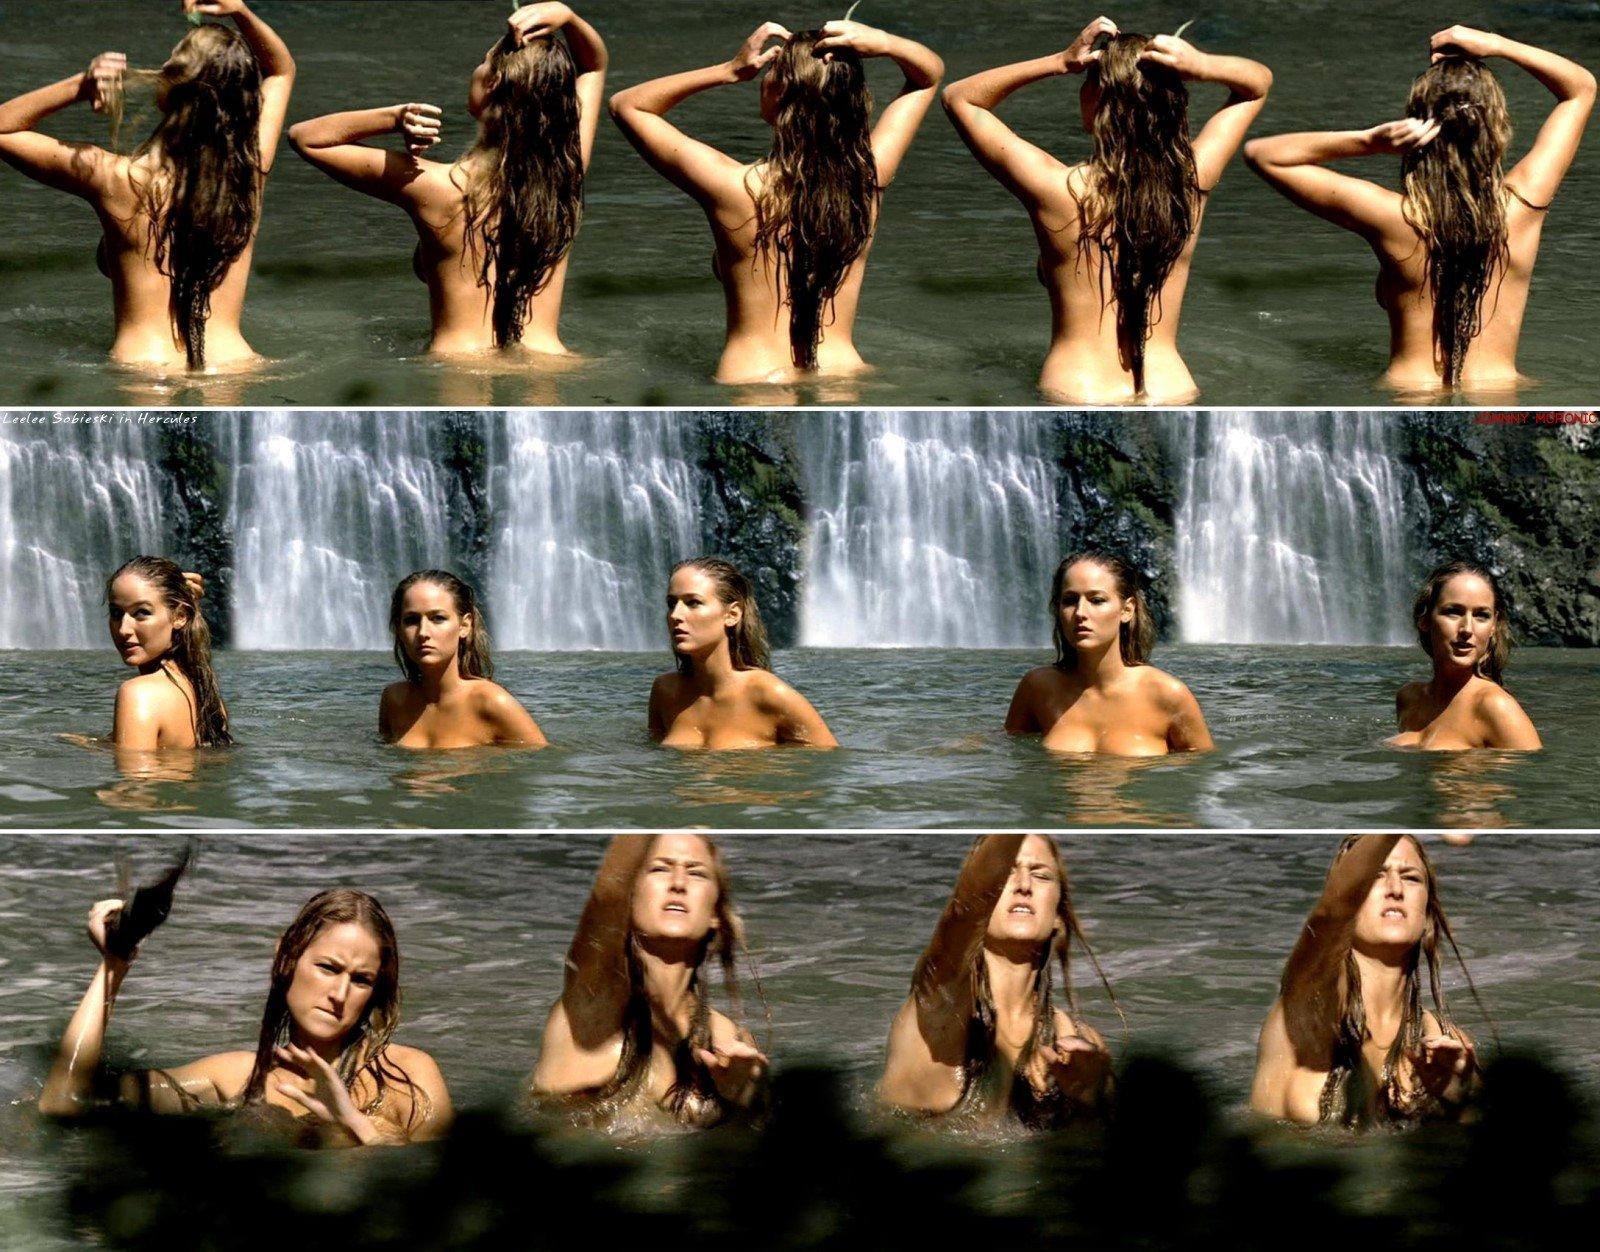 Leelee Sobieski nude pics.